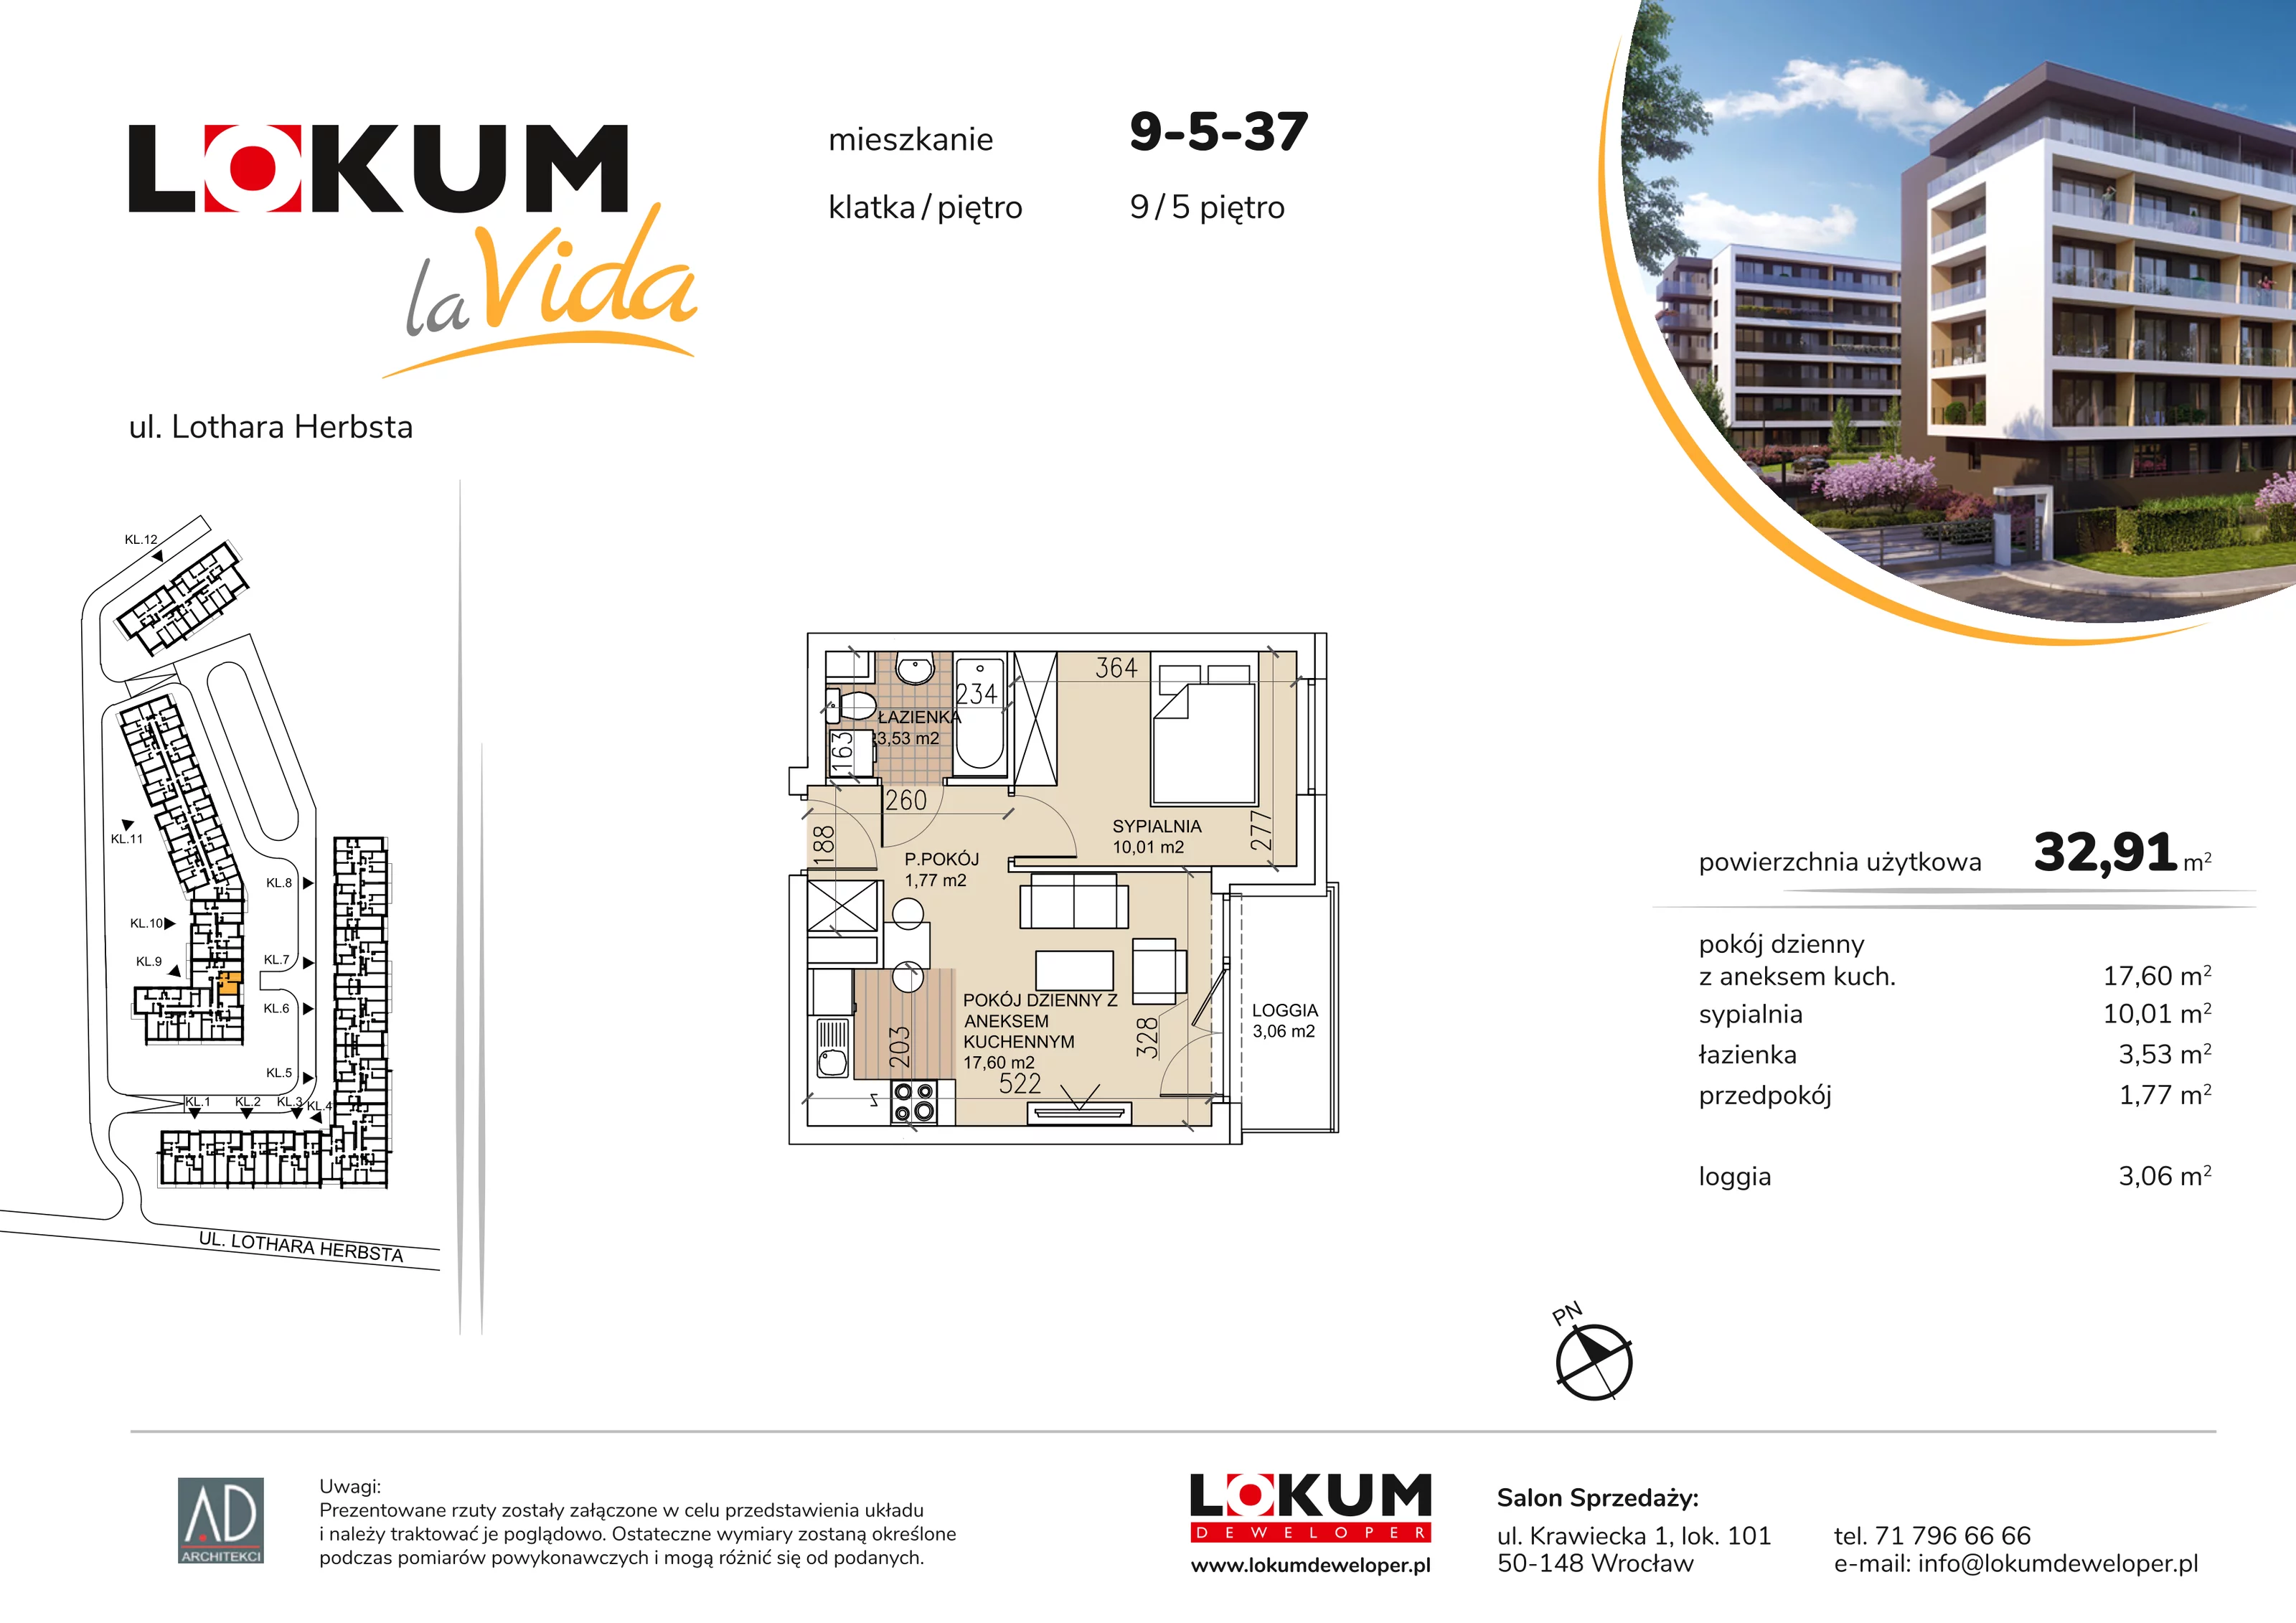 Mieszkanie 32,91 m², piętro 5, oferta nr 9-5-37, Lokum la Vida, Wrocław, Sołtysowice, ul. Lothara Herbsta